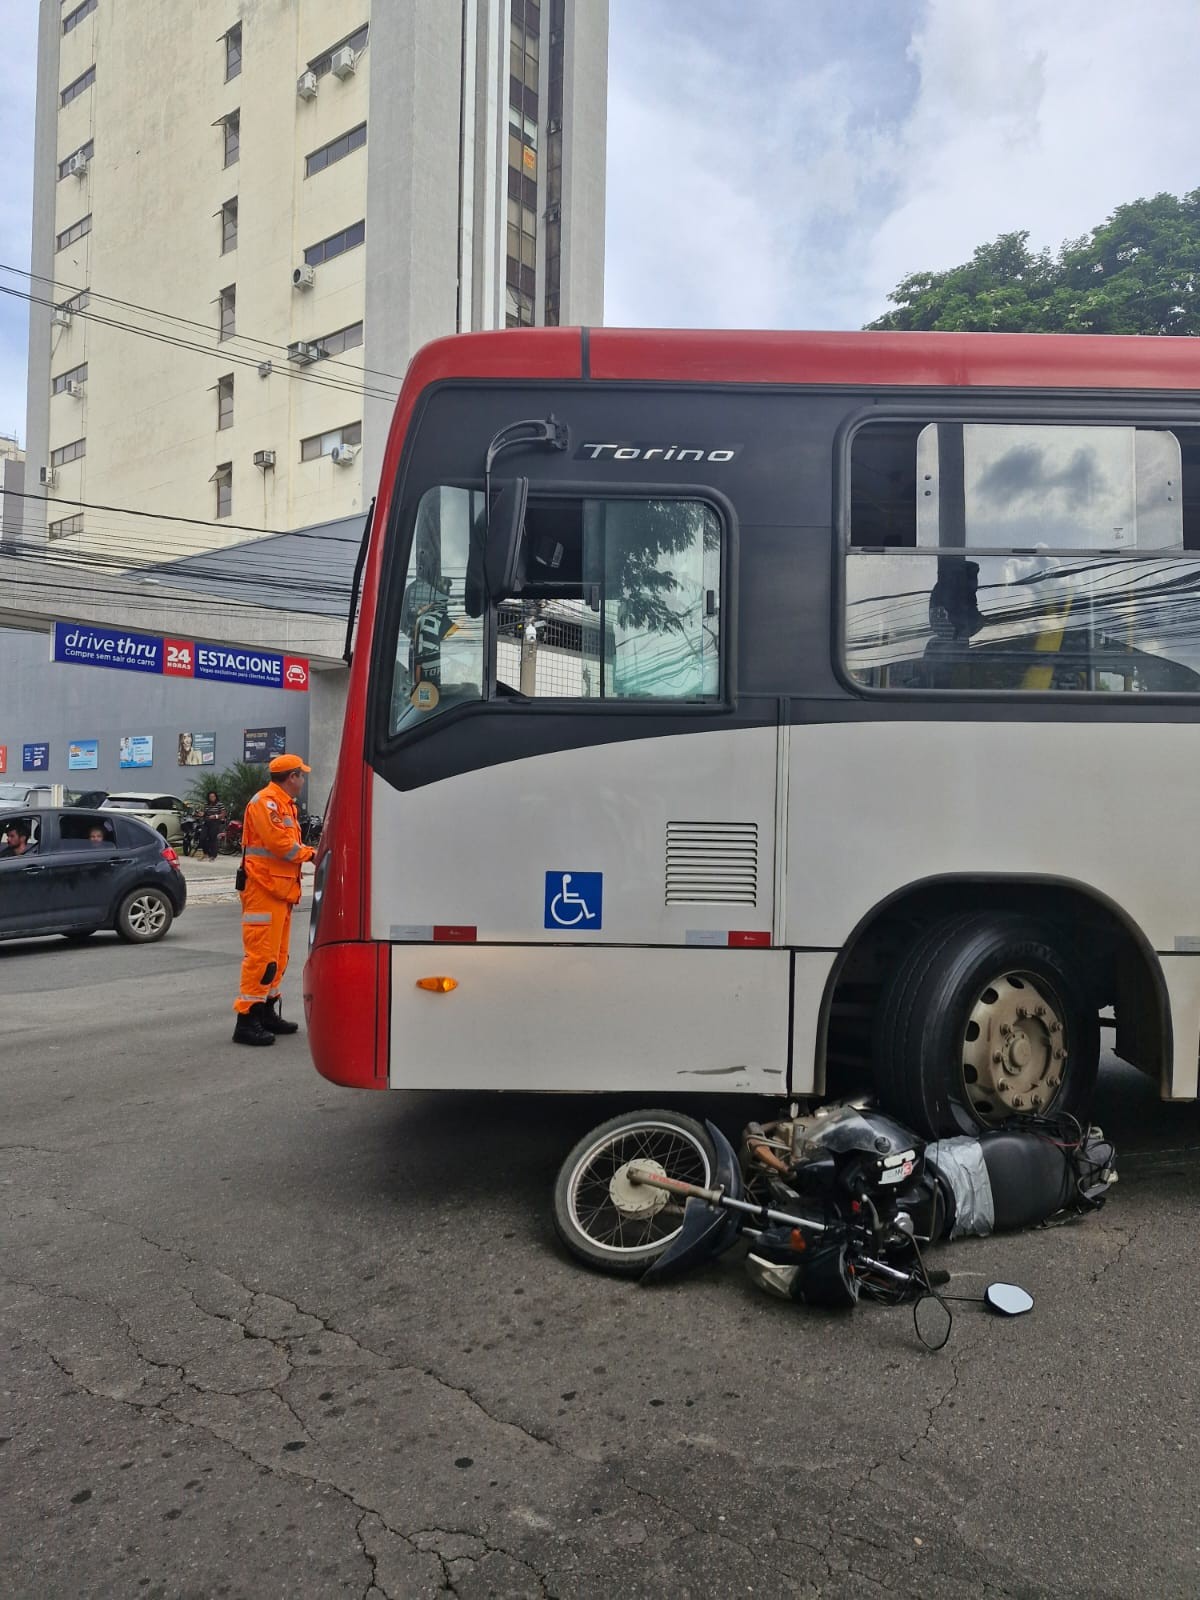 Motociclista tem pé dilacerado após acidente com ônibus urbano em Juiz de Fora